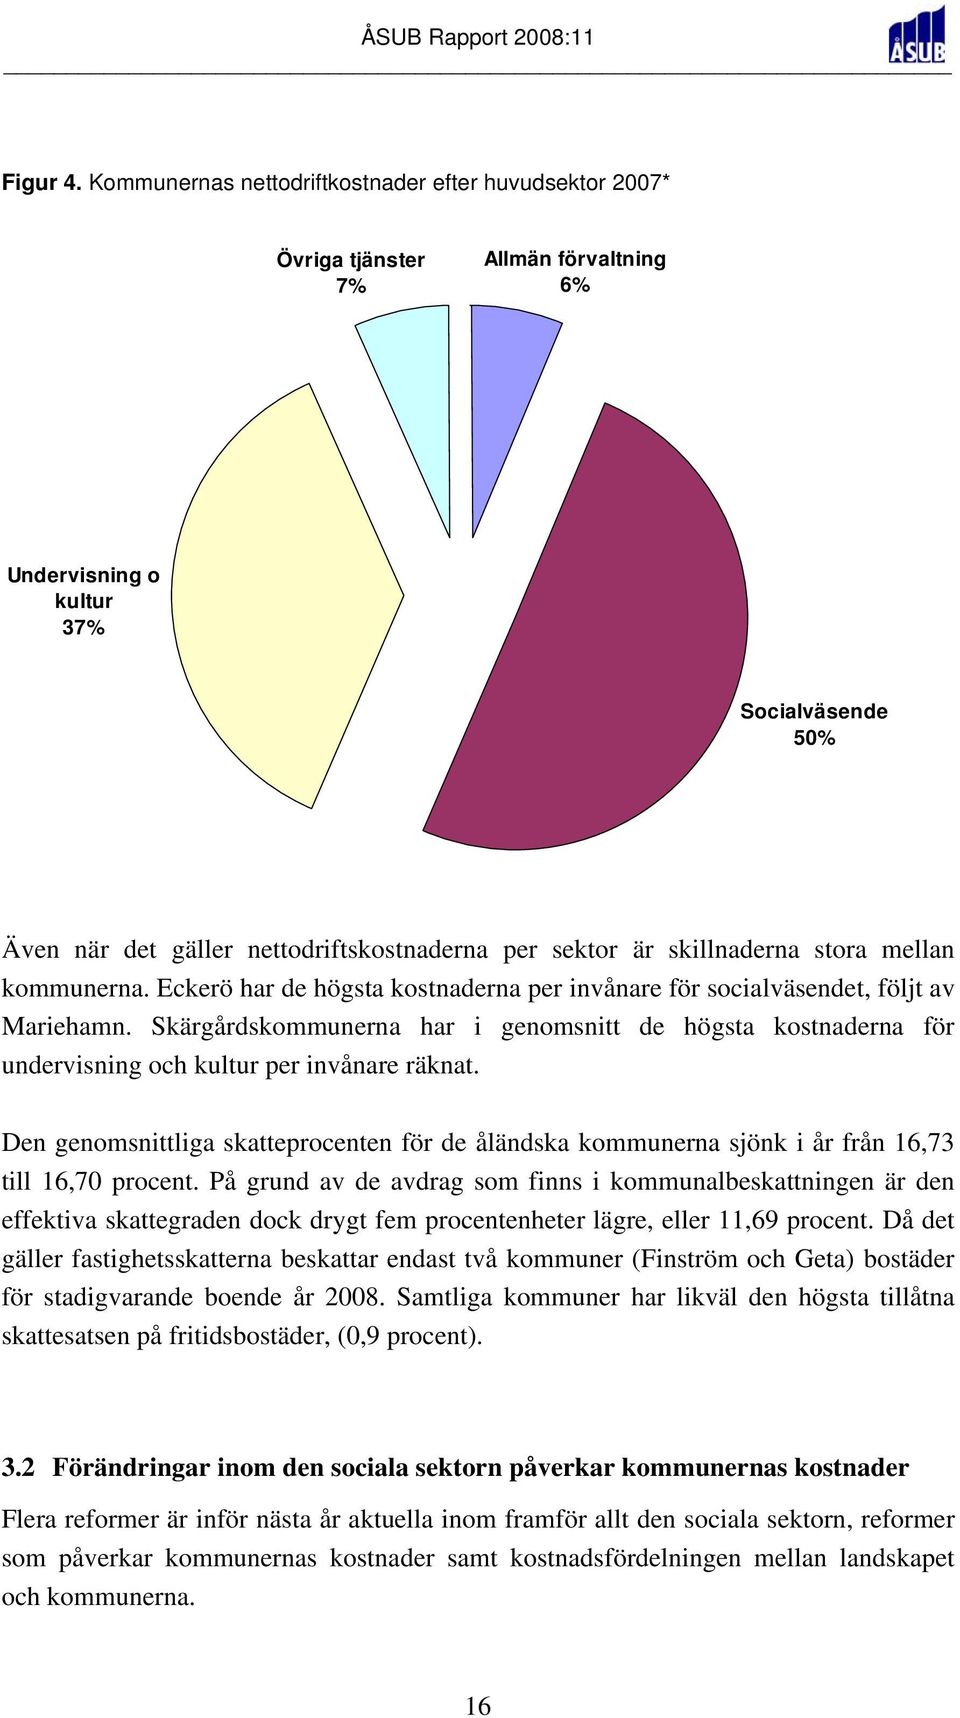 skillnaderna stora mellan kommunerna. Eckerö har de högsta kostnaderna per invånare för socialväsendet, följt av Mariehamn.